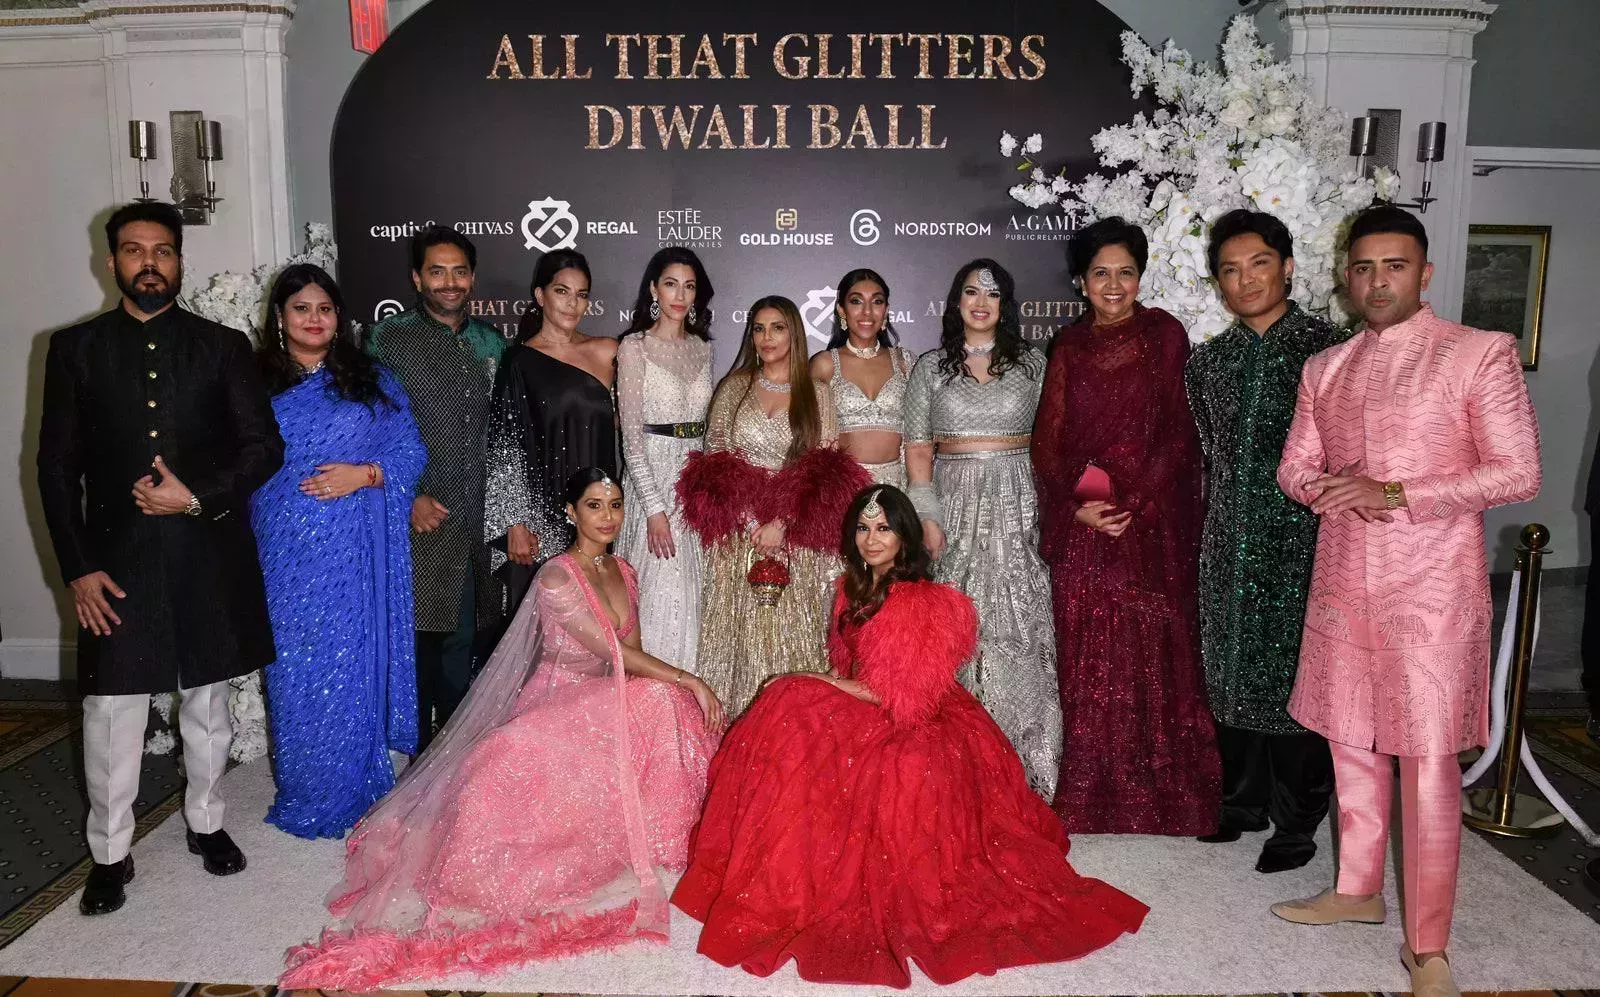 Una noche en el All That Glitters Diwali Ball de Nueva York